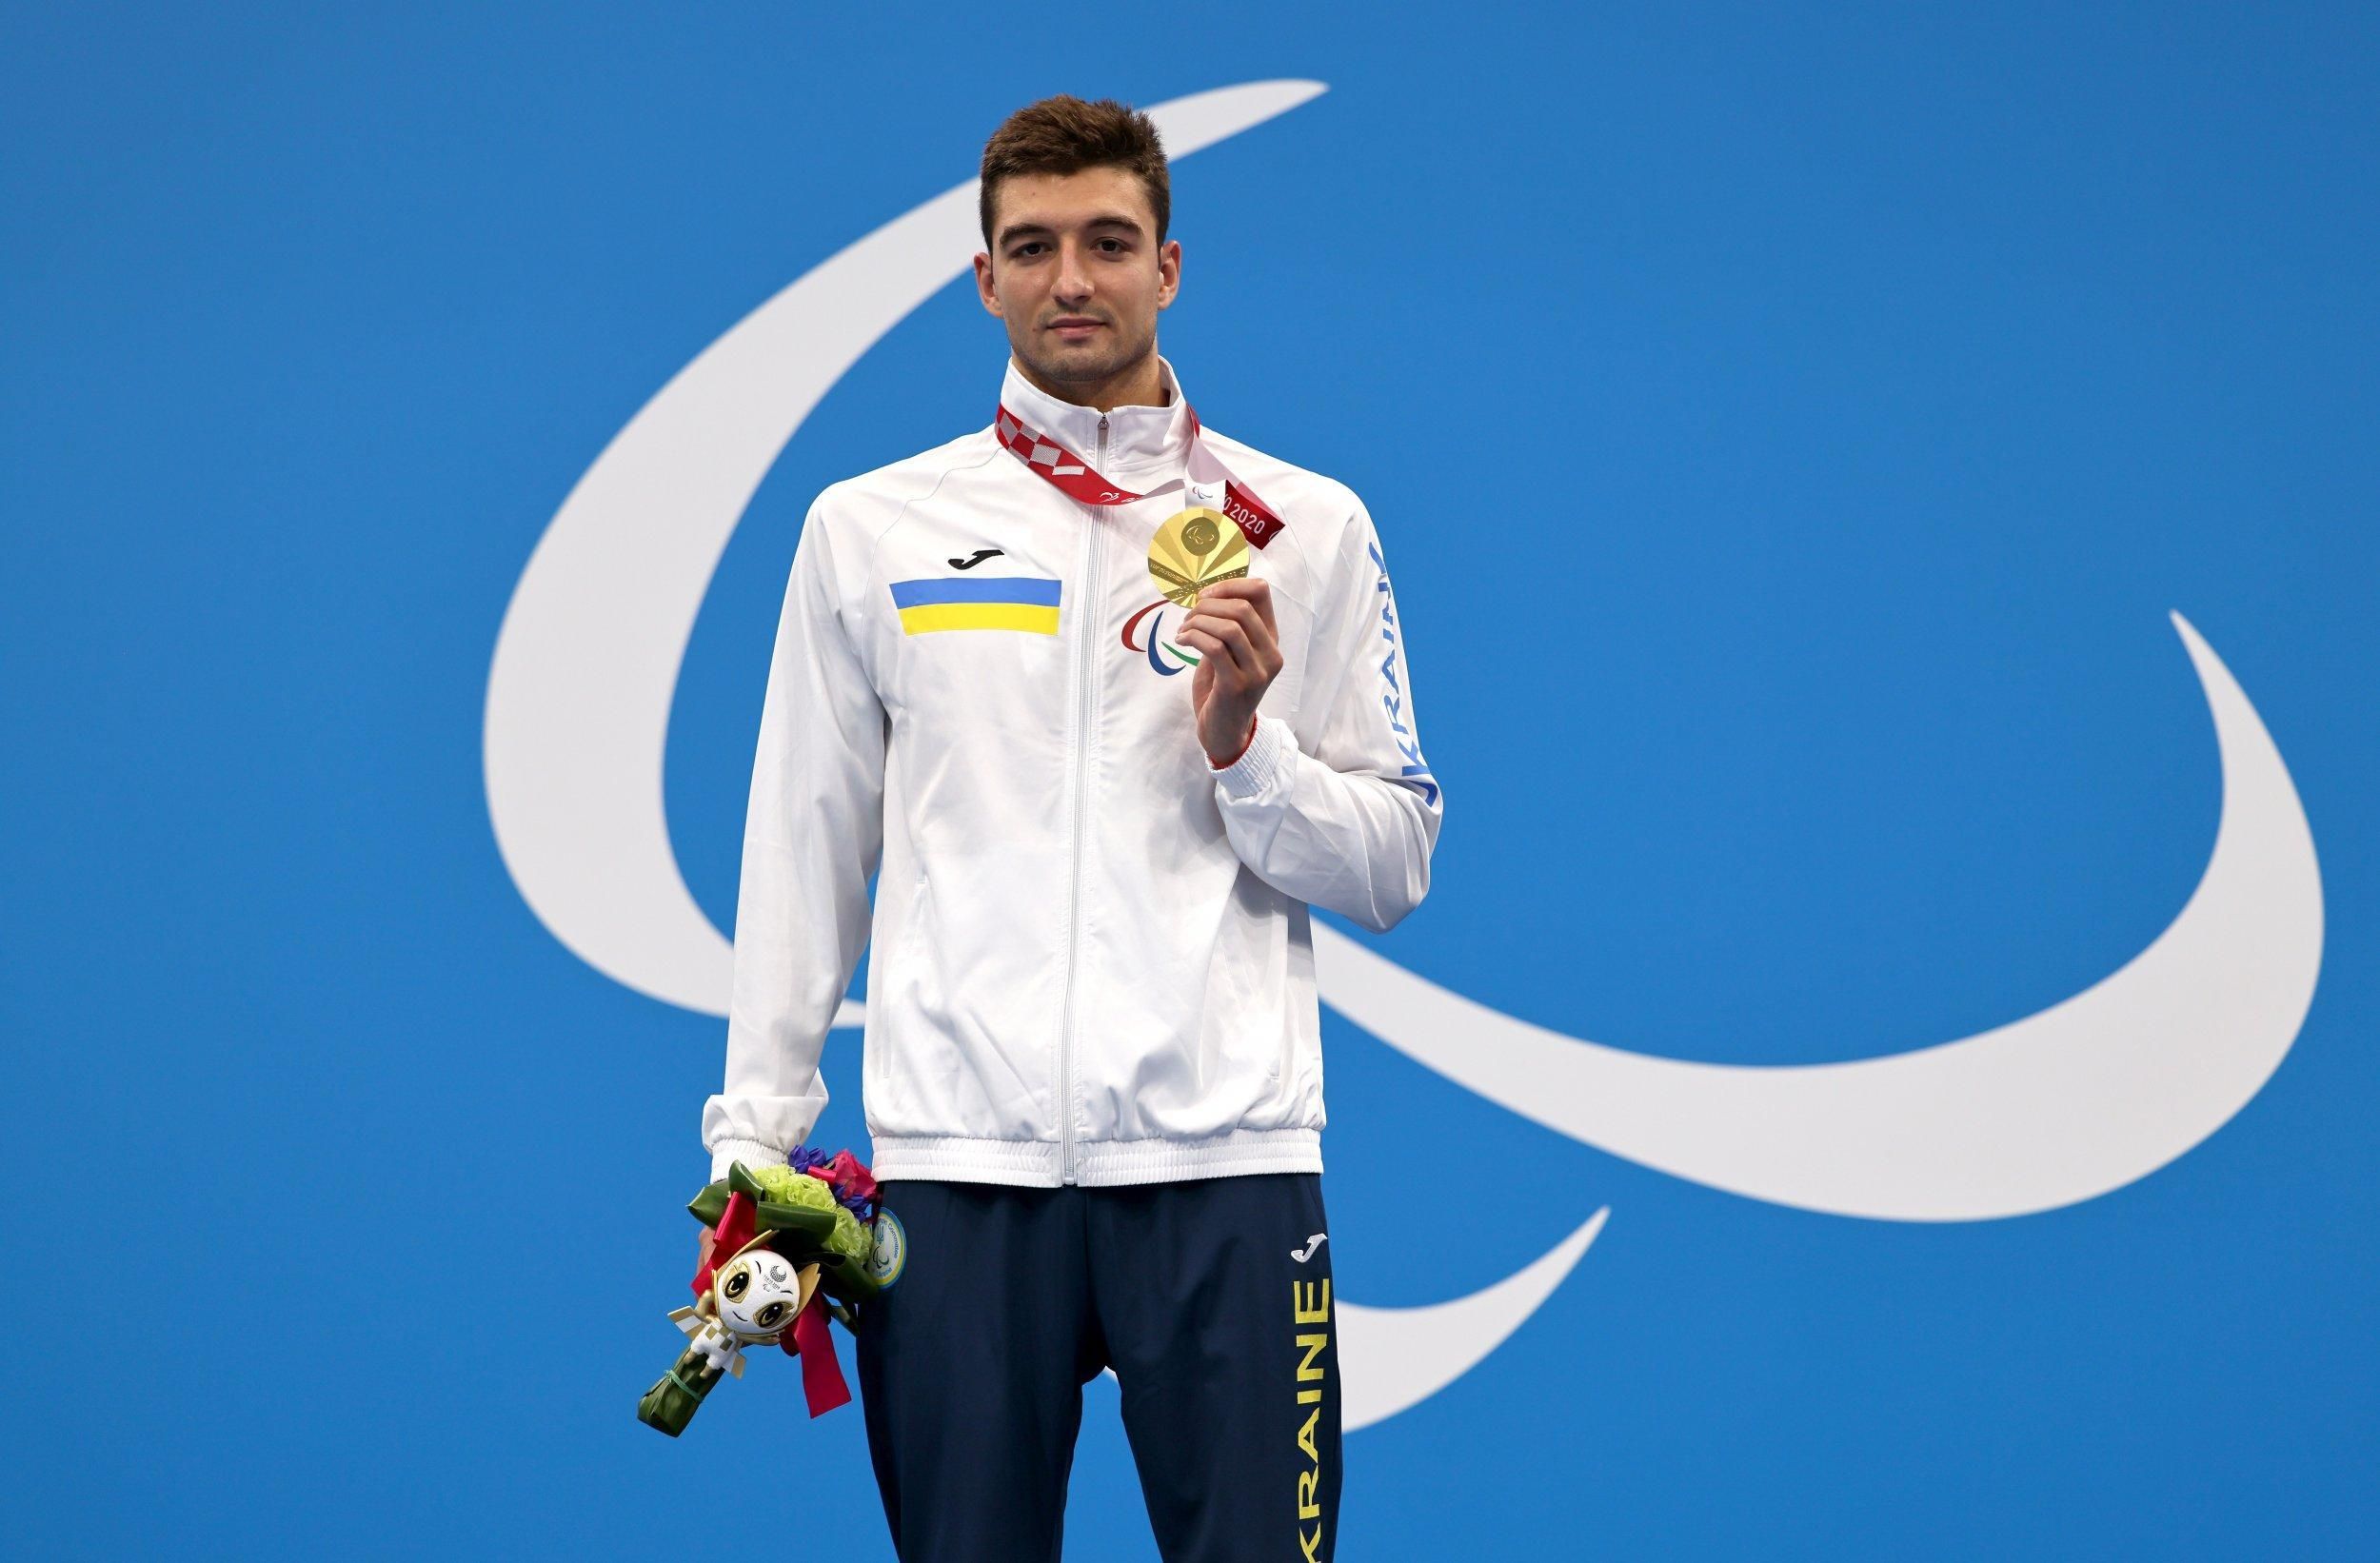 565 миллионов от Украины: призеры Олимпиады и Паралимпиады получили деньги за медали в Токио